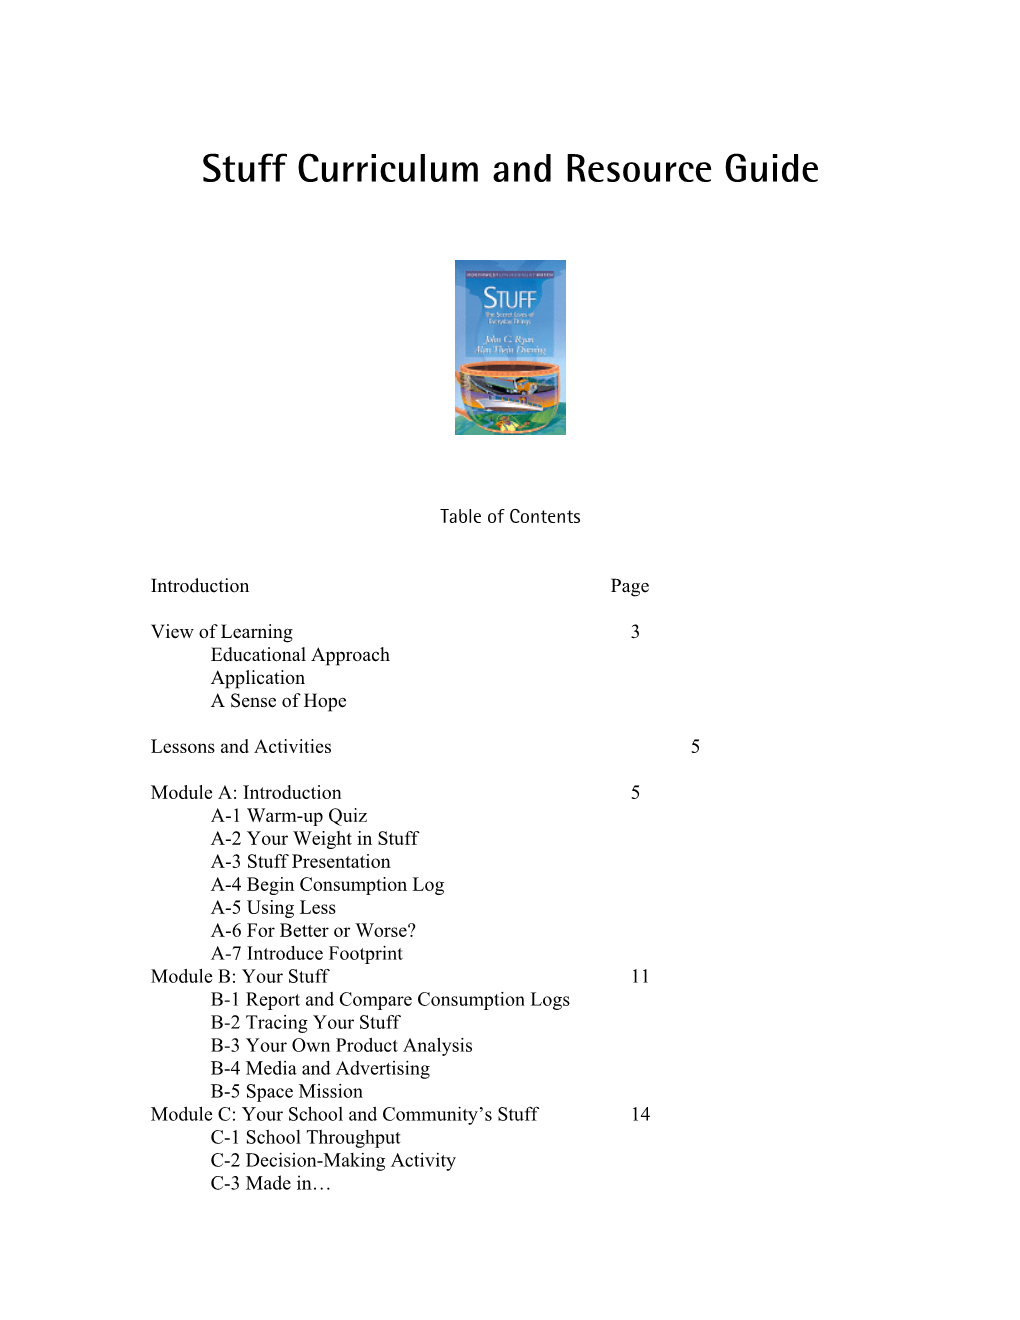 Stuff Curriculum Guide, 2